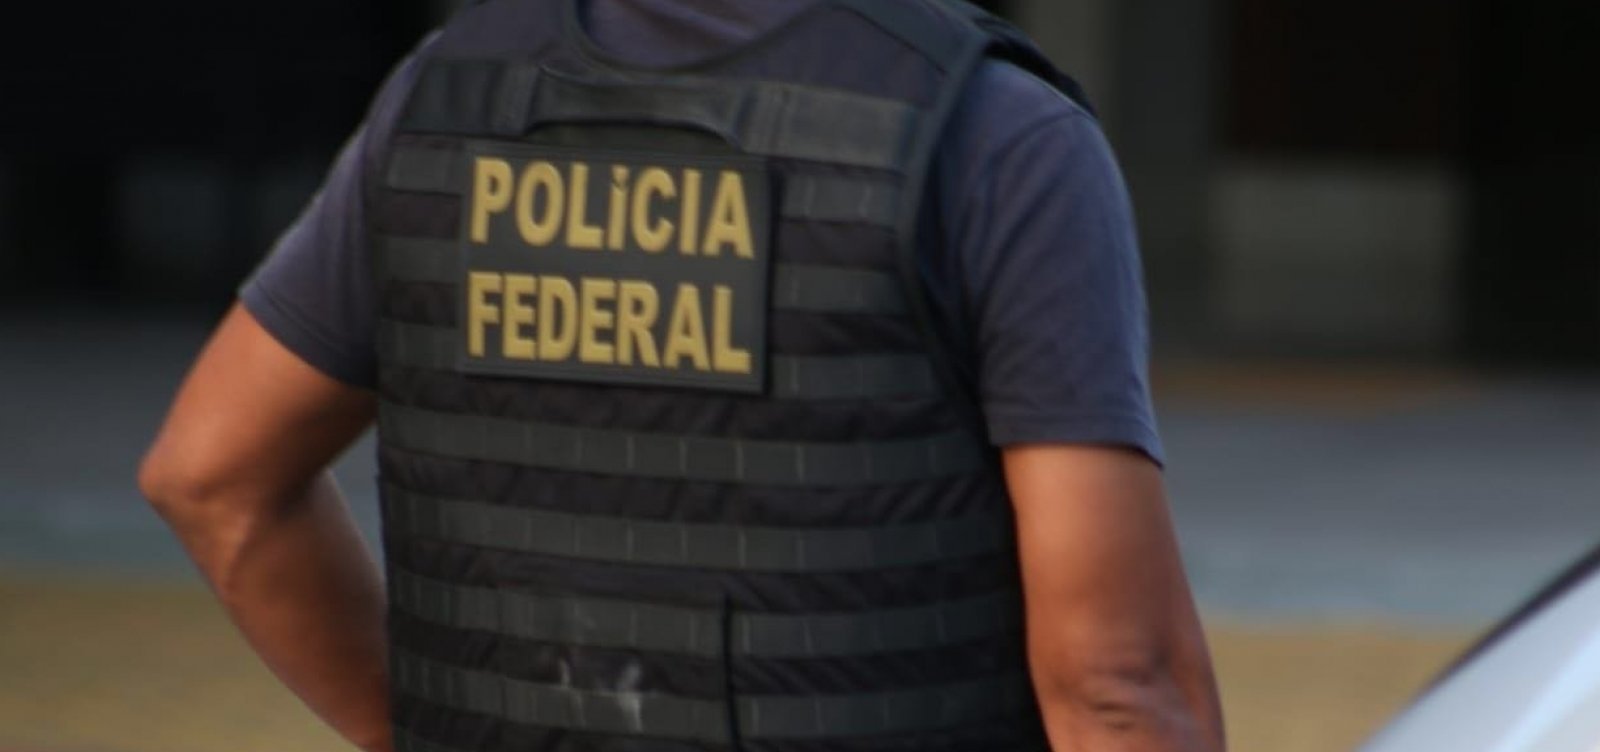 Polícia Federal cumpre mandado em combate à pornografia infanto-juvenil no interior da Bahia